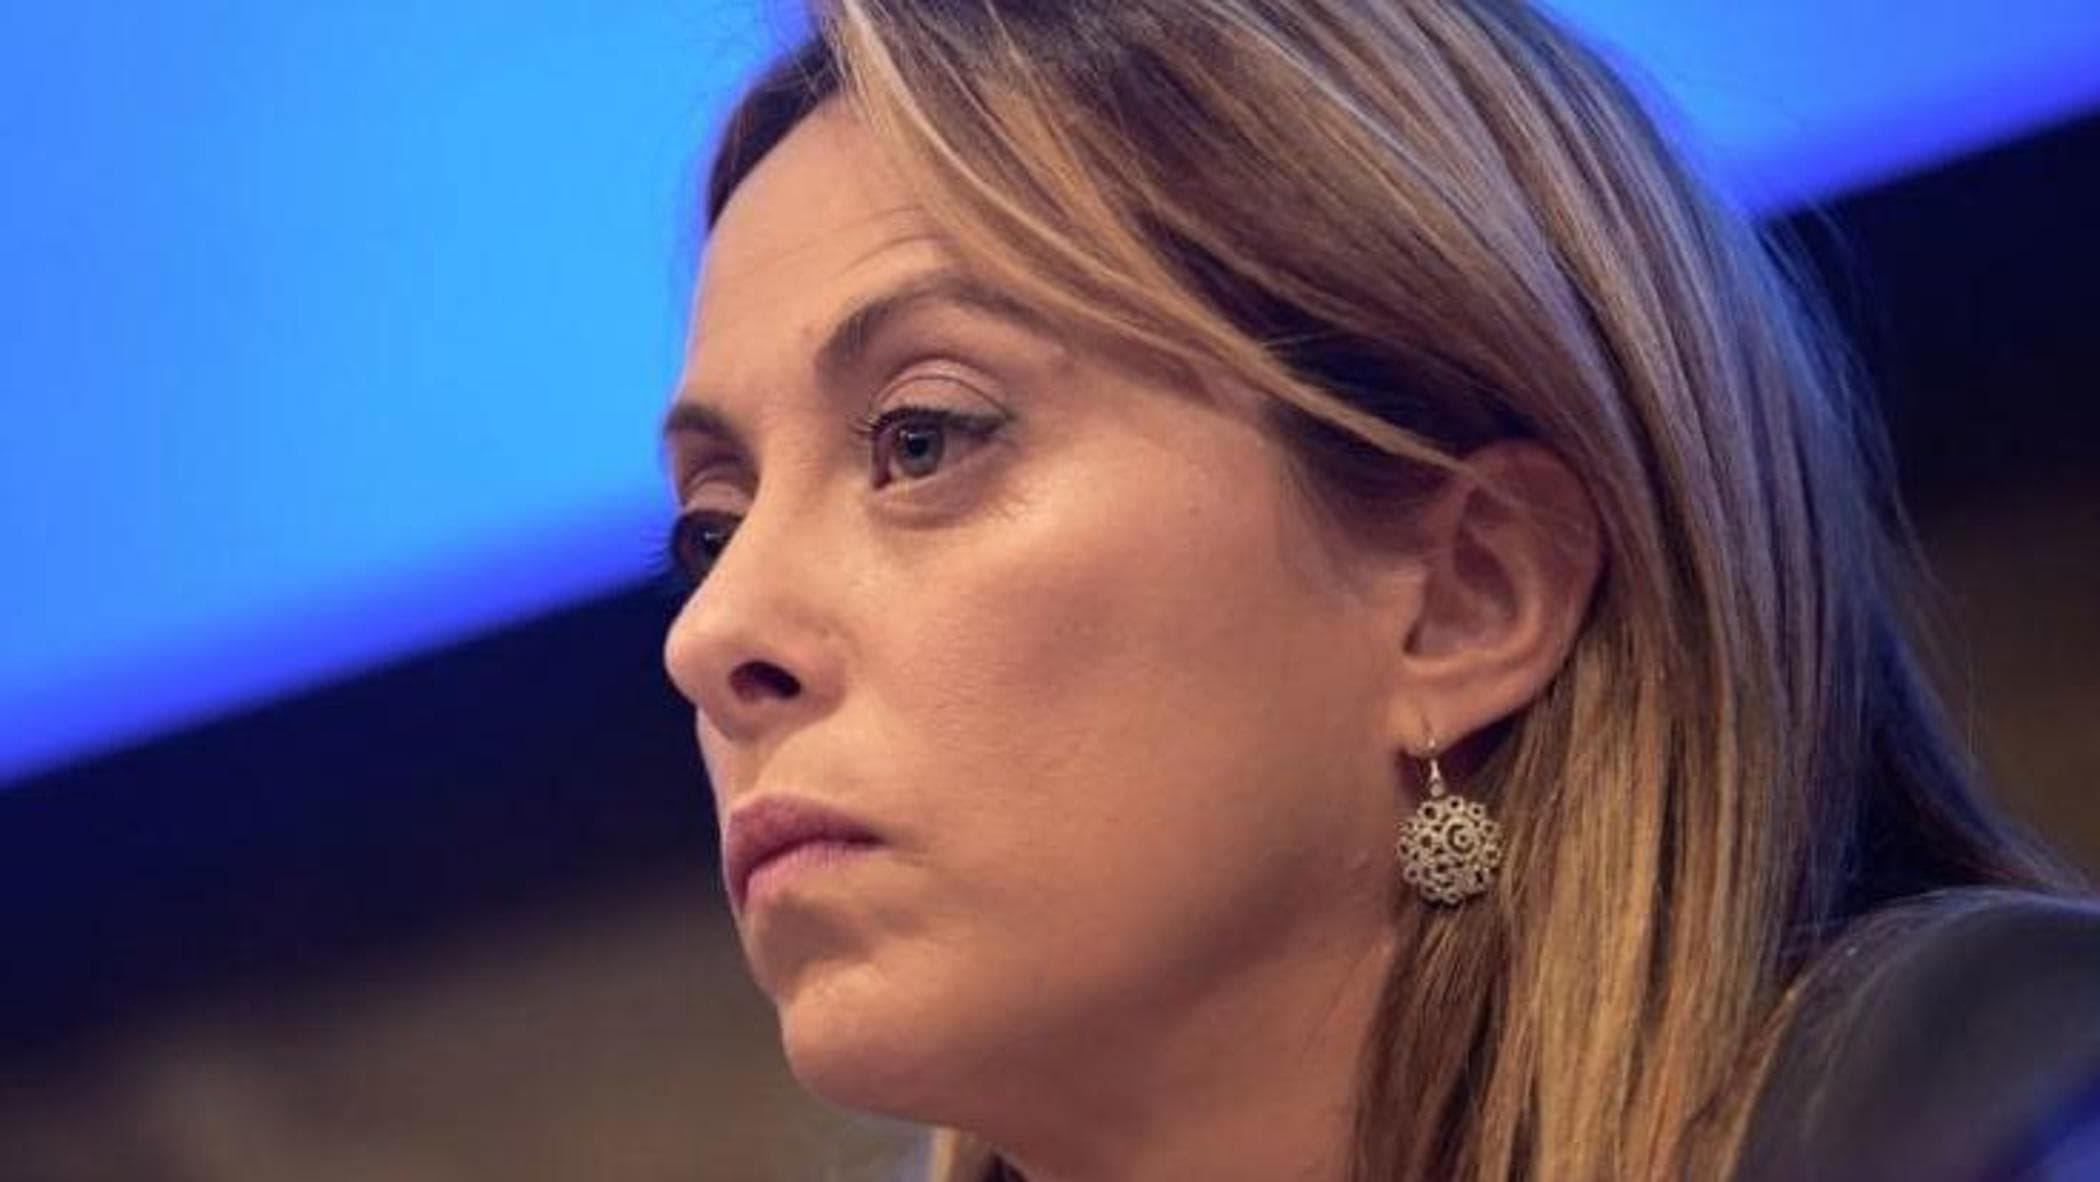 I giudici contro Giorgia Meloni: "Respingiamo con sdegno le accuse"